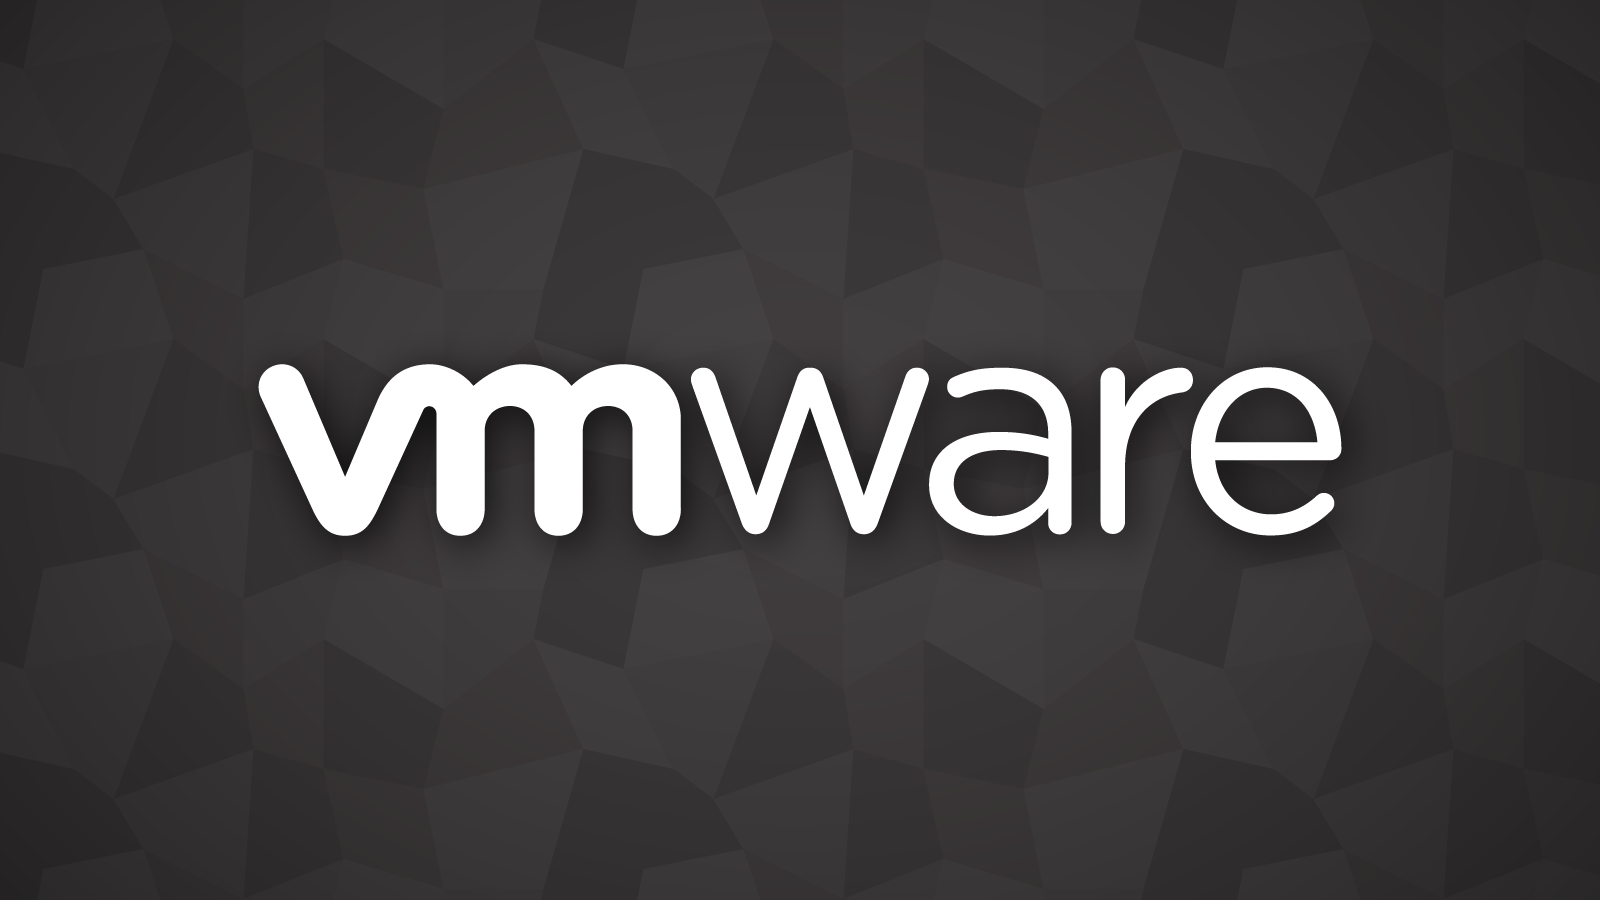 Устранена критическая RCE-уязвимость в VMware vCenter Server